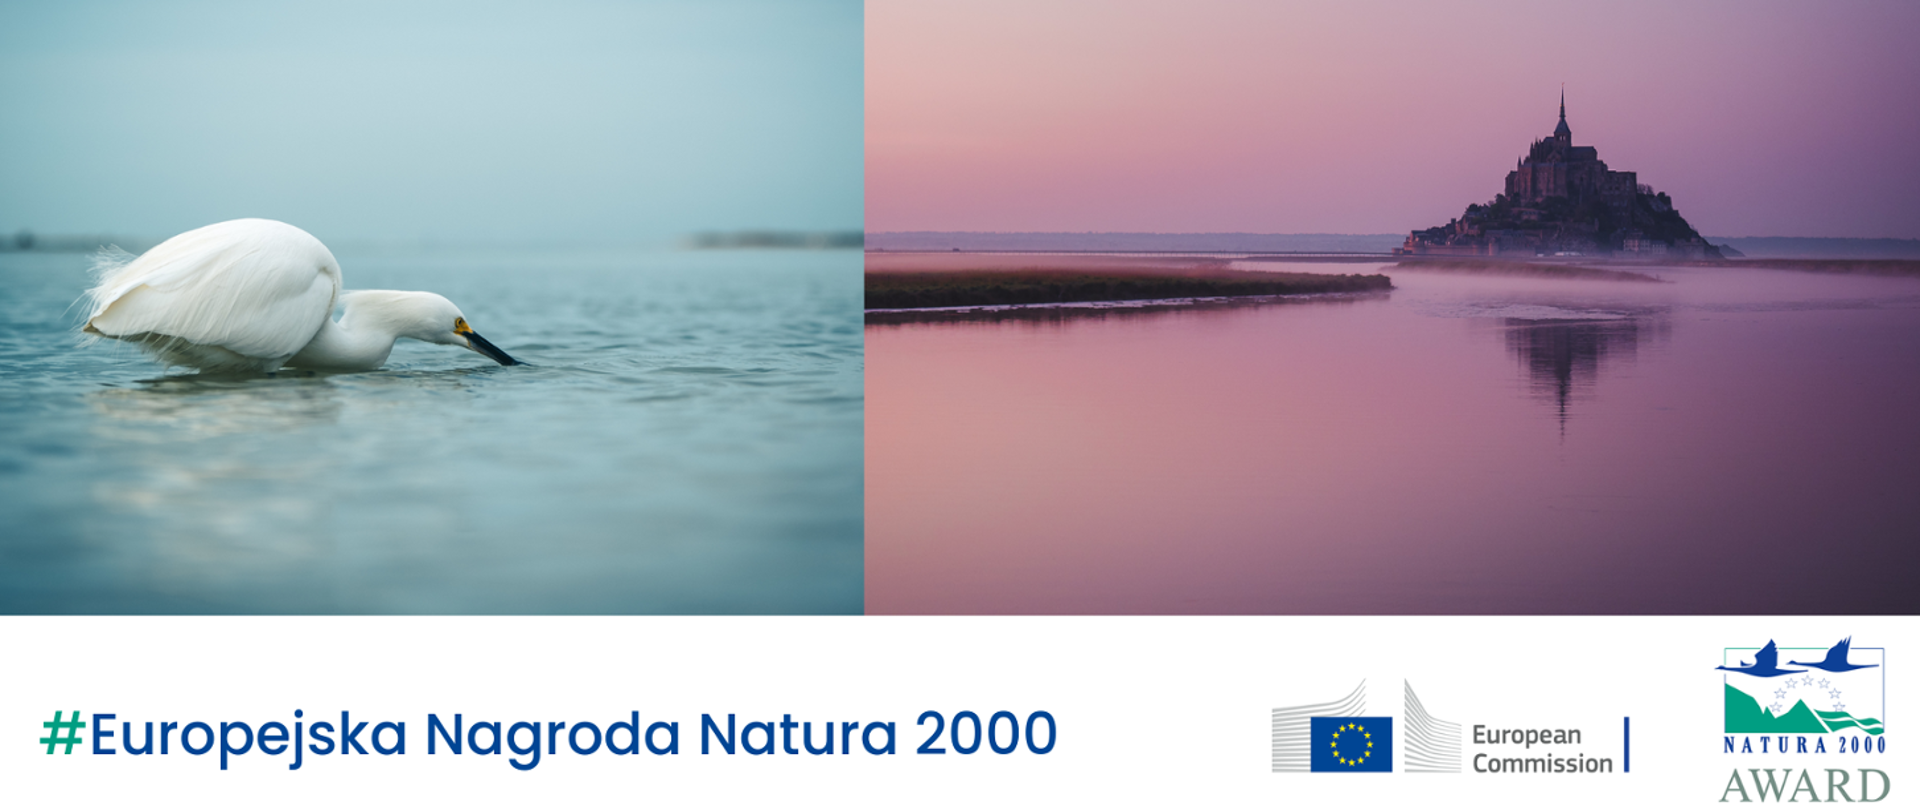 Dwa zdjęcia zestawione ze sobą. Na jednym biały ptak na wodzie, na drugim krajobraz z budowlą typu zamek.
Na dole napis #Europejska Nagroda Natura 2000 i dwa logotypy: Komisji Europejskiej i Europejskiej Nagrody Natura 2000.